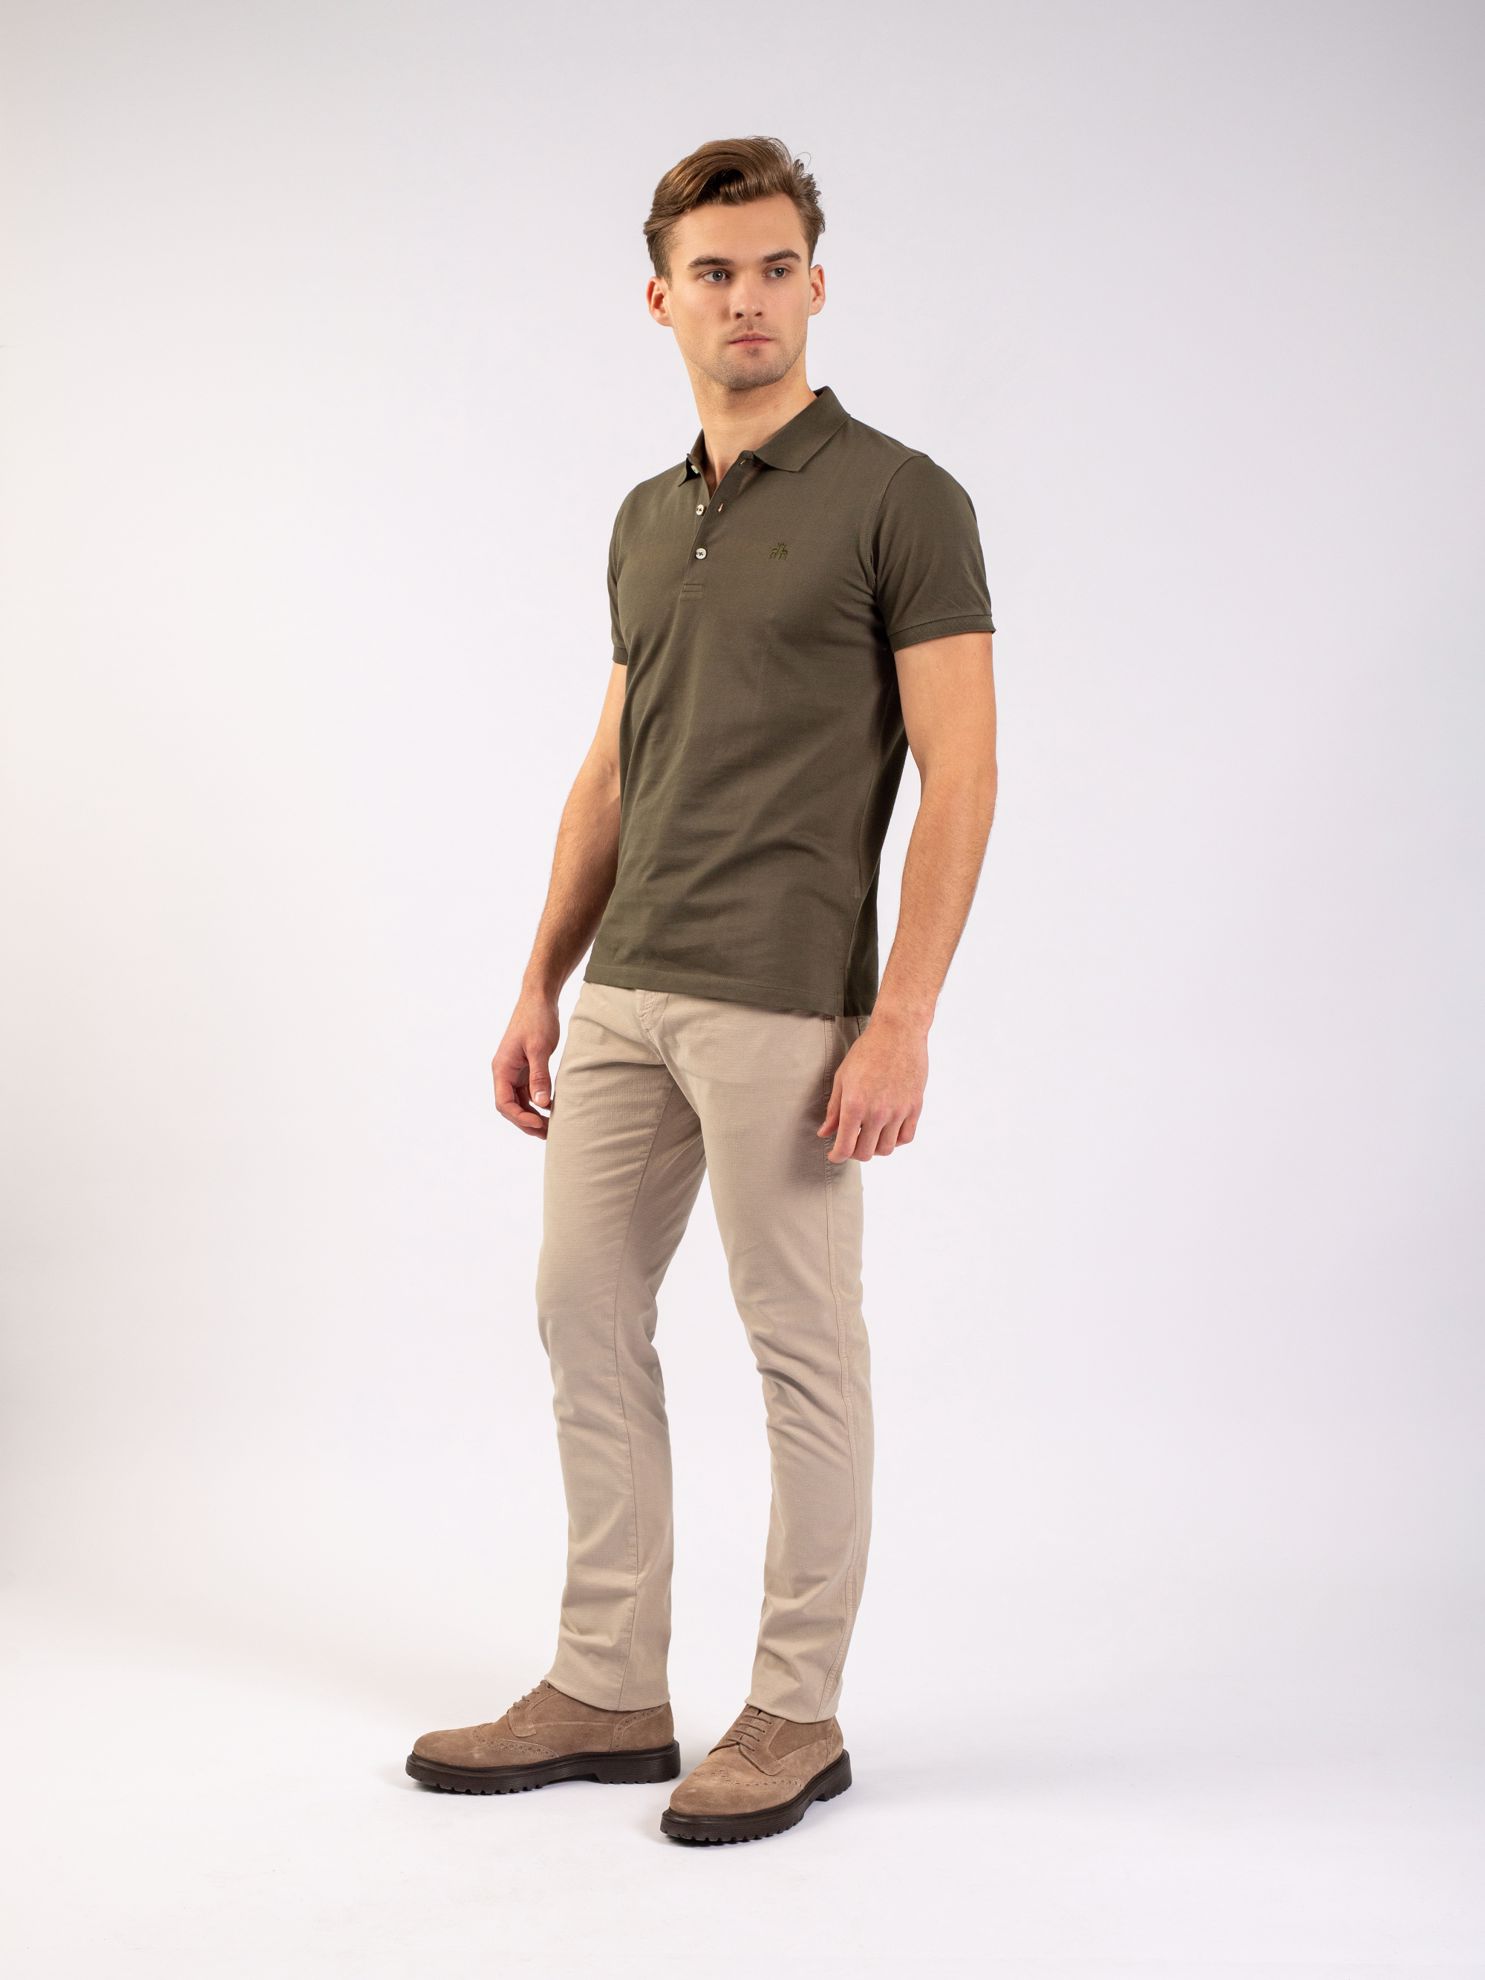 Karaca Erkek Slim Fit Polo Yaka Tişört-Haki. ürün görseli